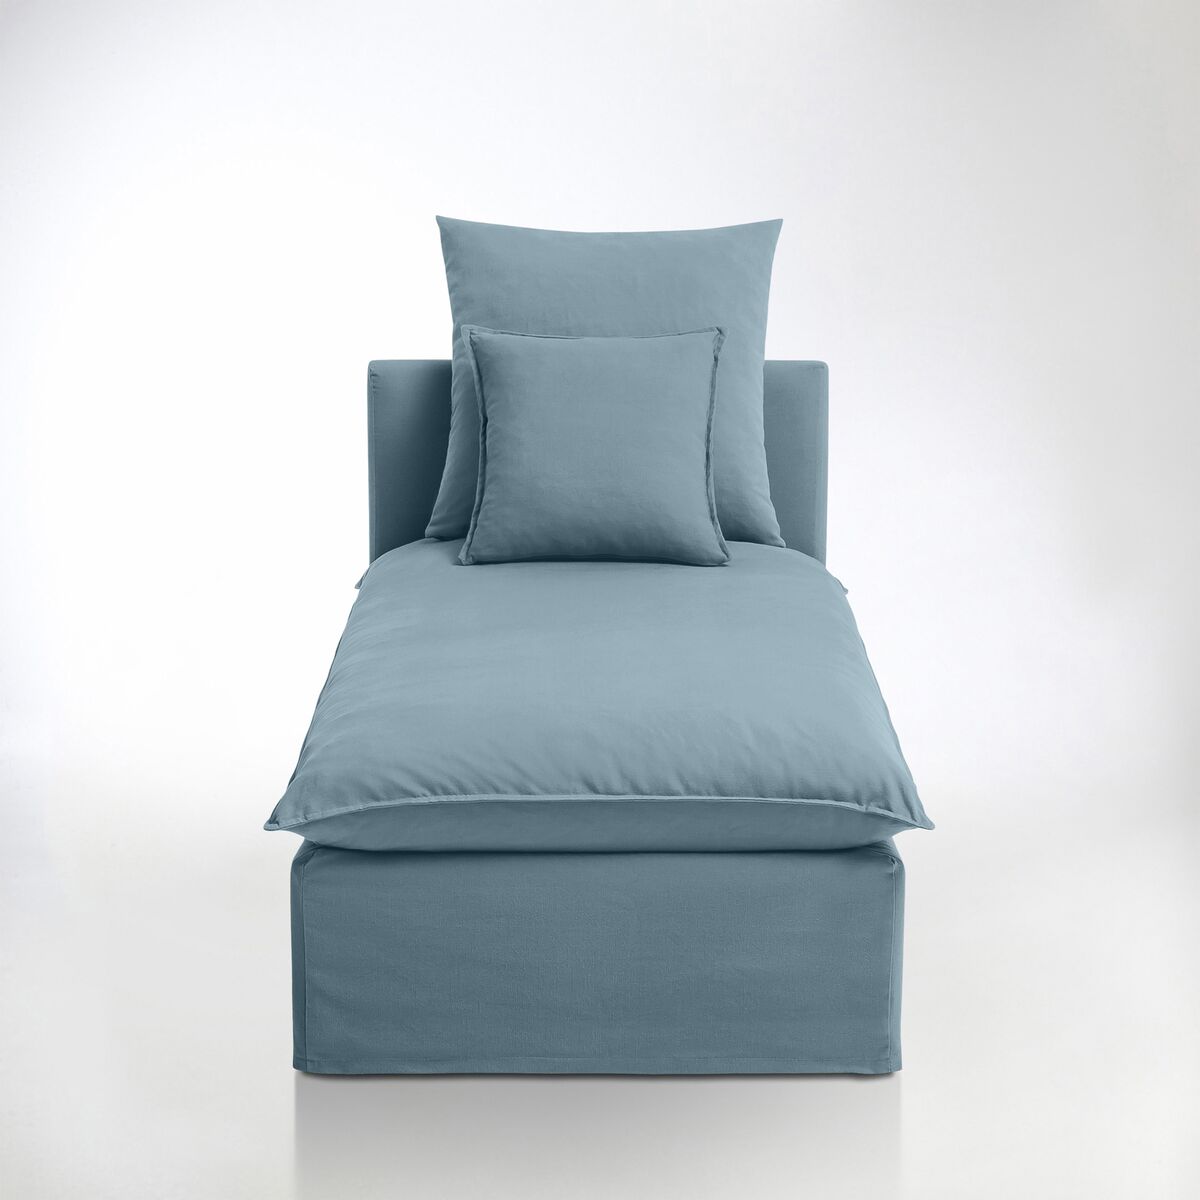 La Redoute Interieurs Chaise longue com capa amovível, em tecido pré-lavado puro algodão, Nélia   Azul-Claro